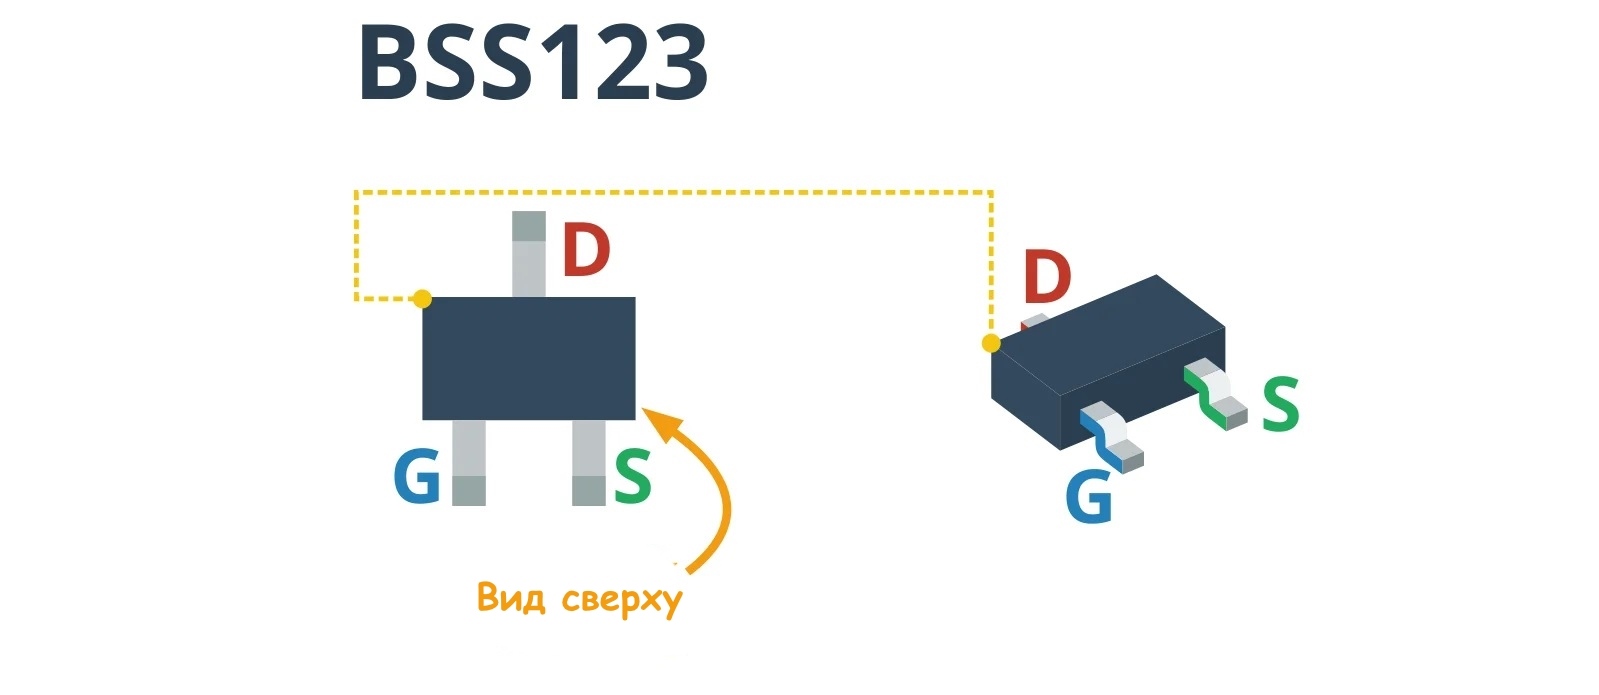 Описание выводов SMD транзистора BSS123